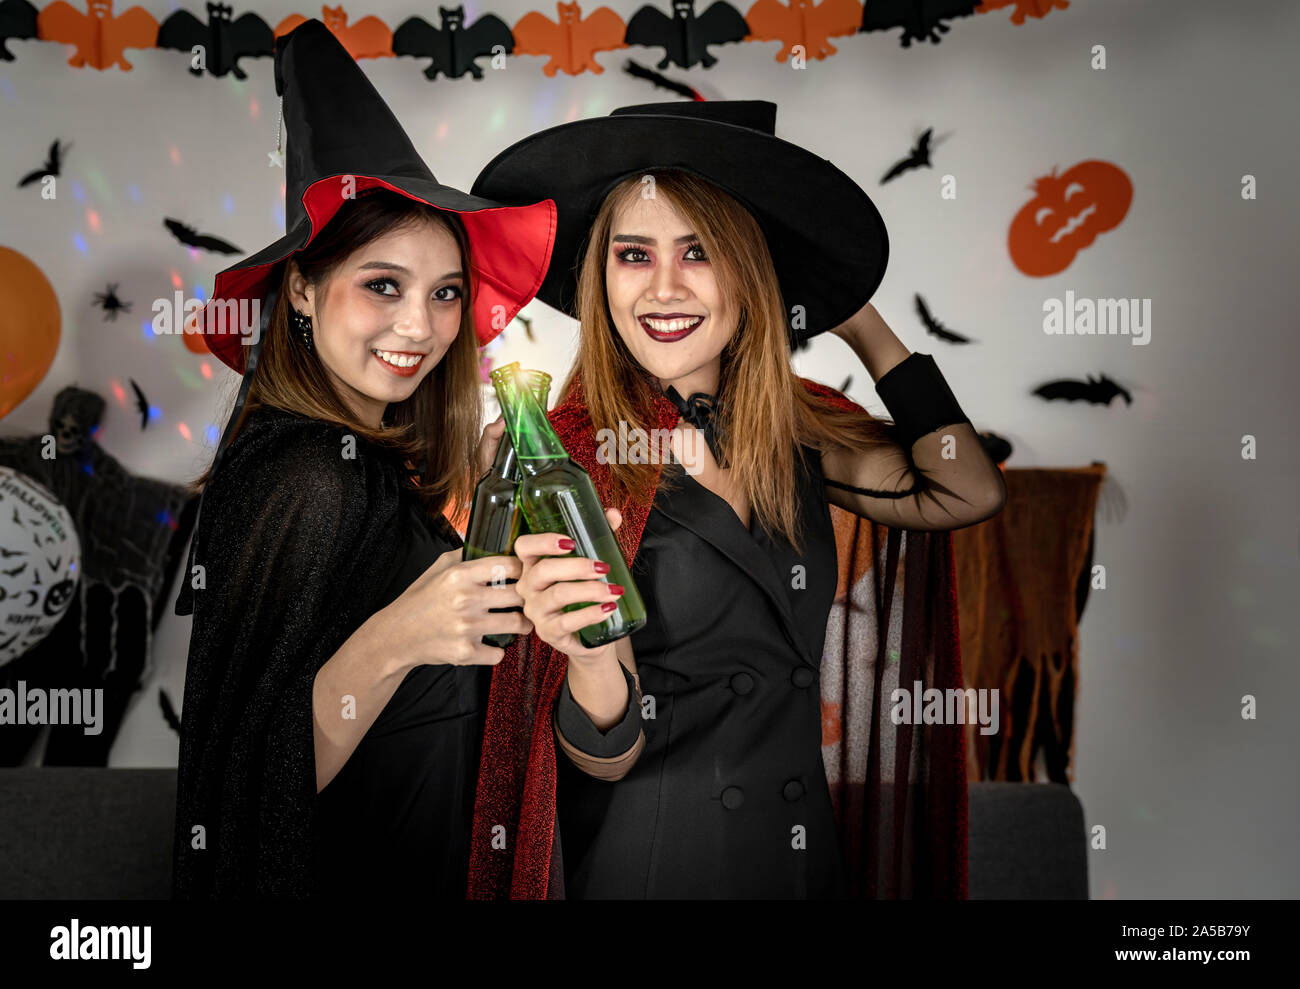 Zwei junge Erwachsener und Jugendlicher Mädchen feiern eine Halloween Party  Karneval in Halloween Kostüme Alkohol Bier Stockfotografie - Alamy